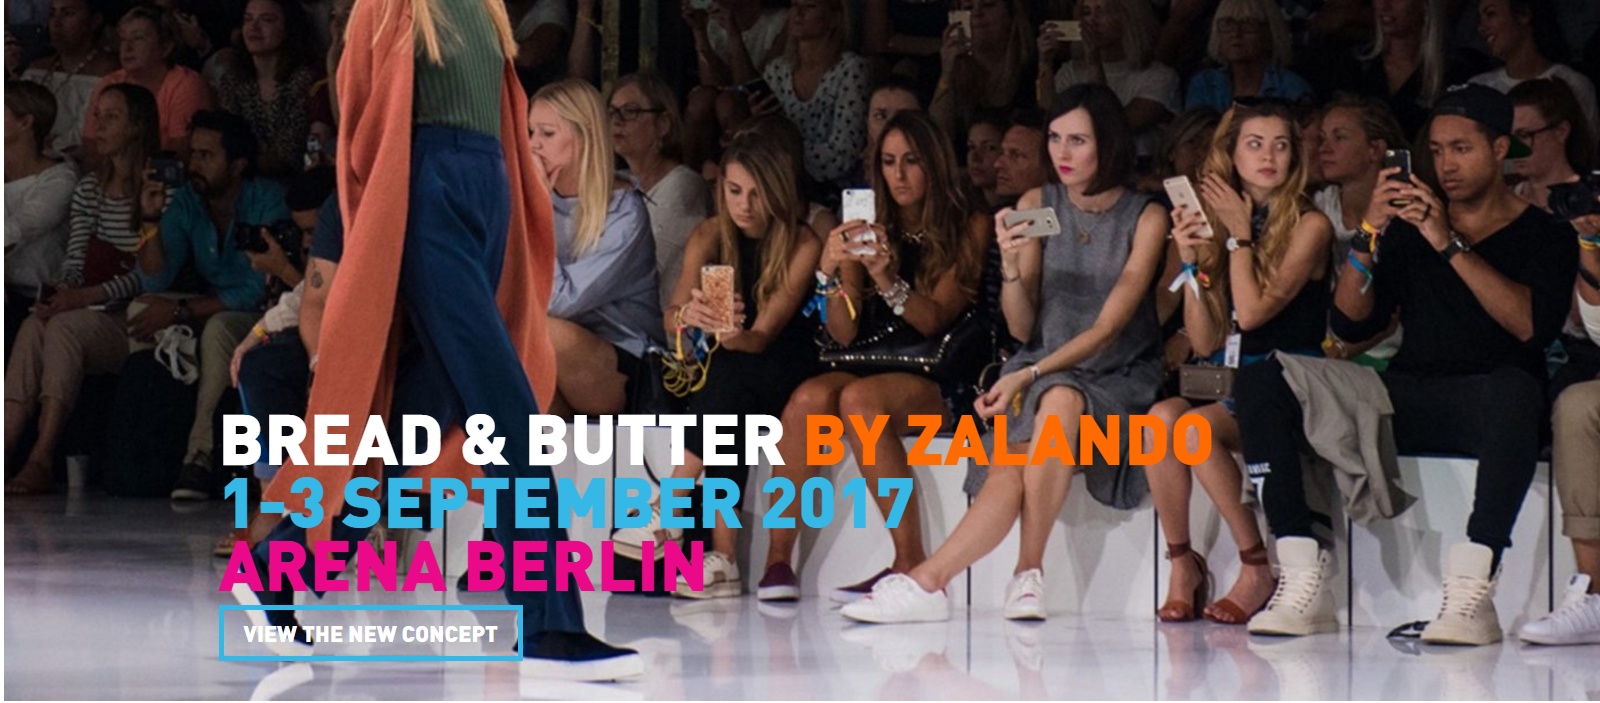 Bread & Butter - Zalando annuncia la seconda edizione